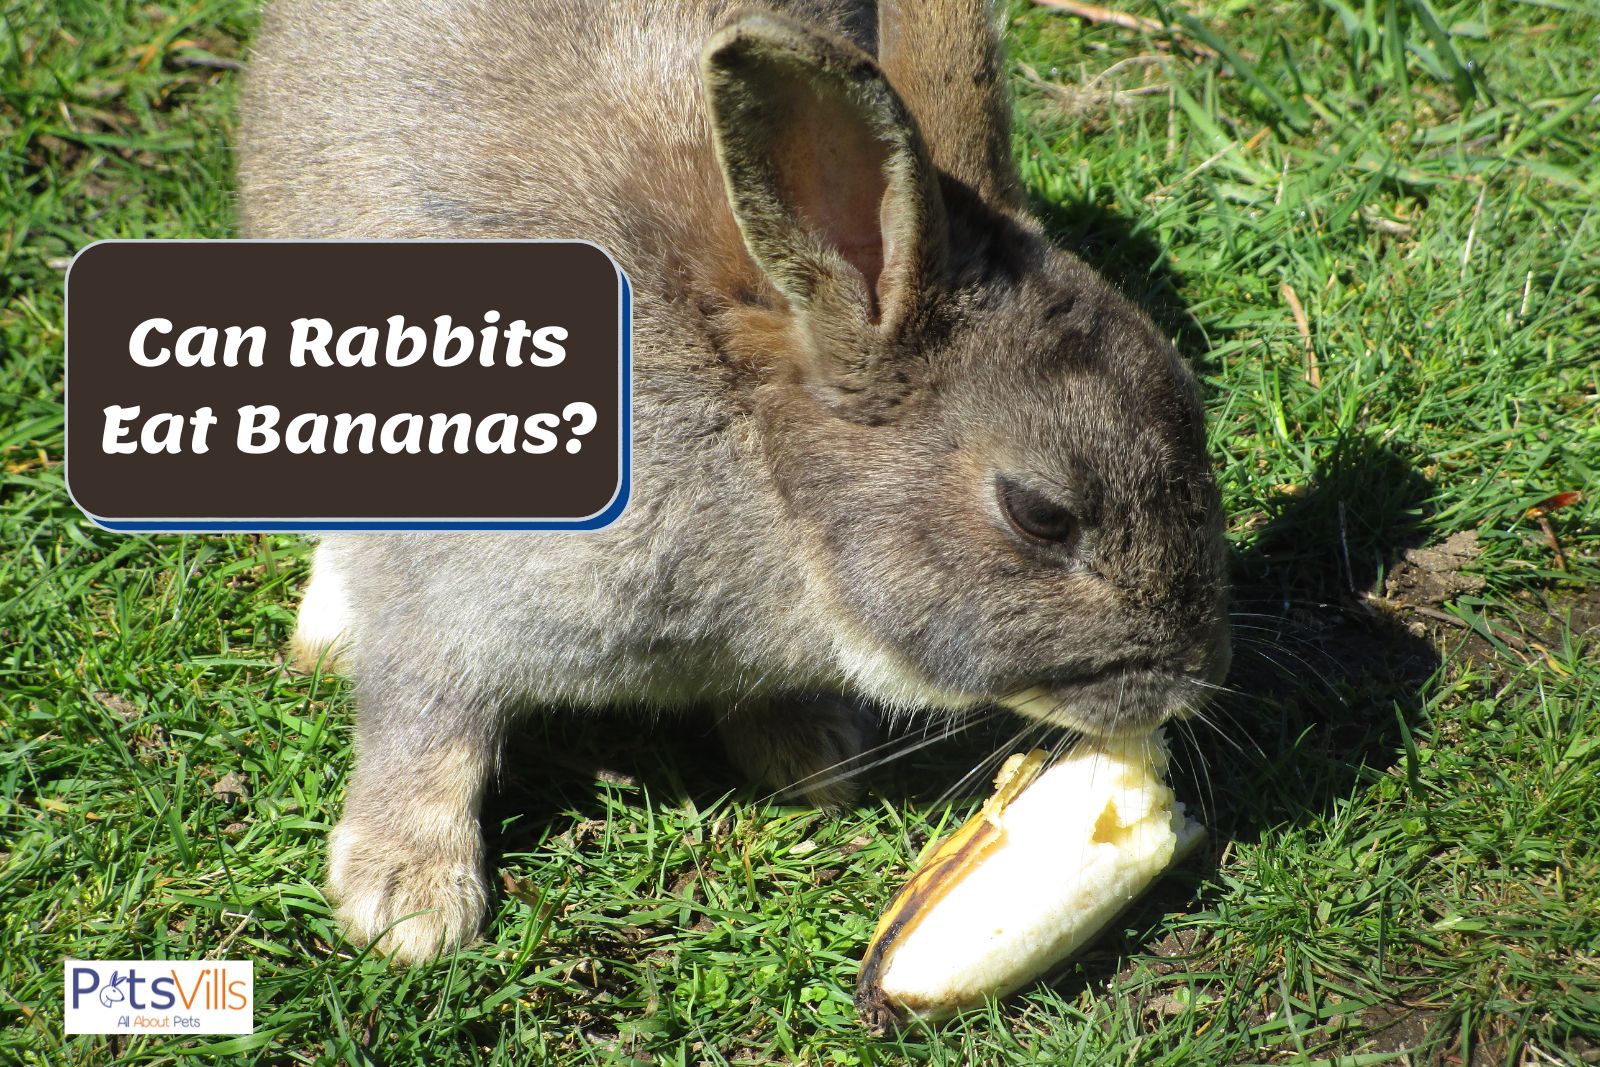 rabbit trying to eat banana but can rabbits eat bananas